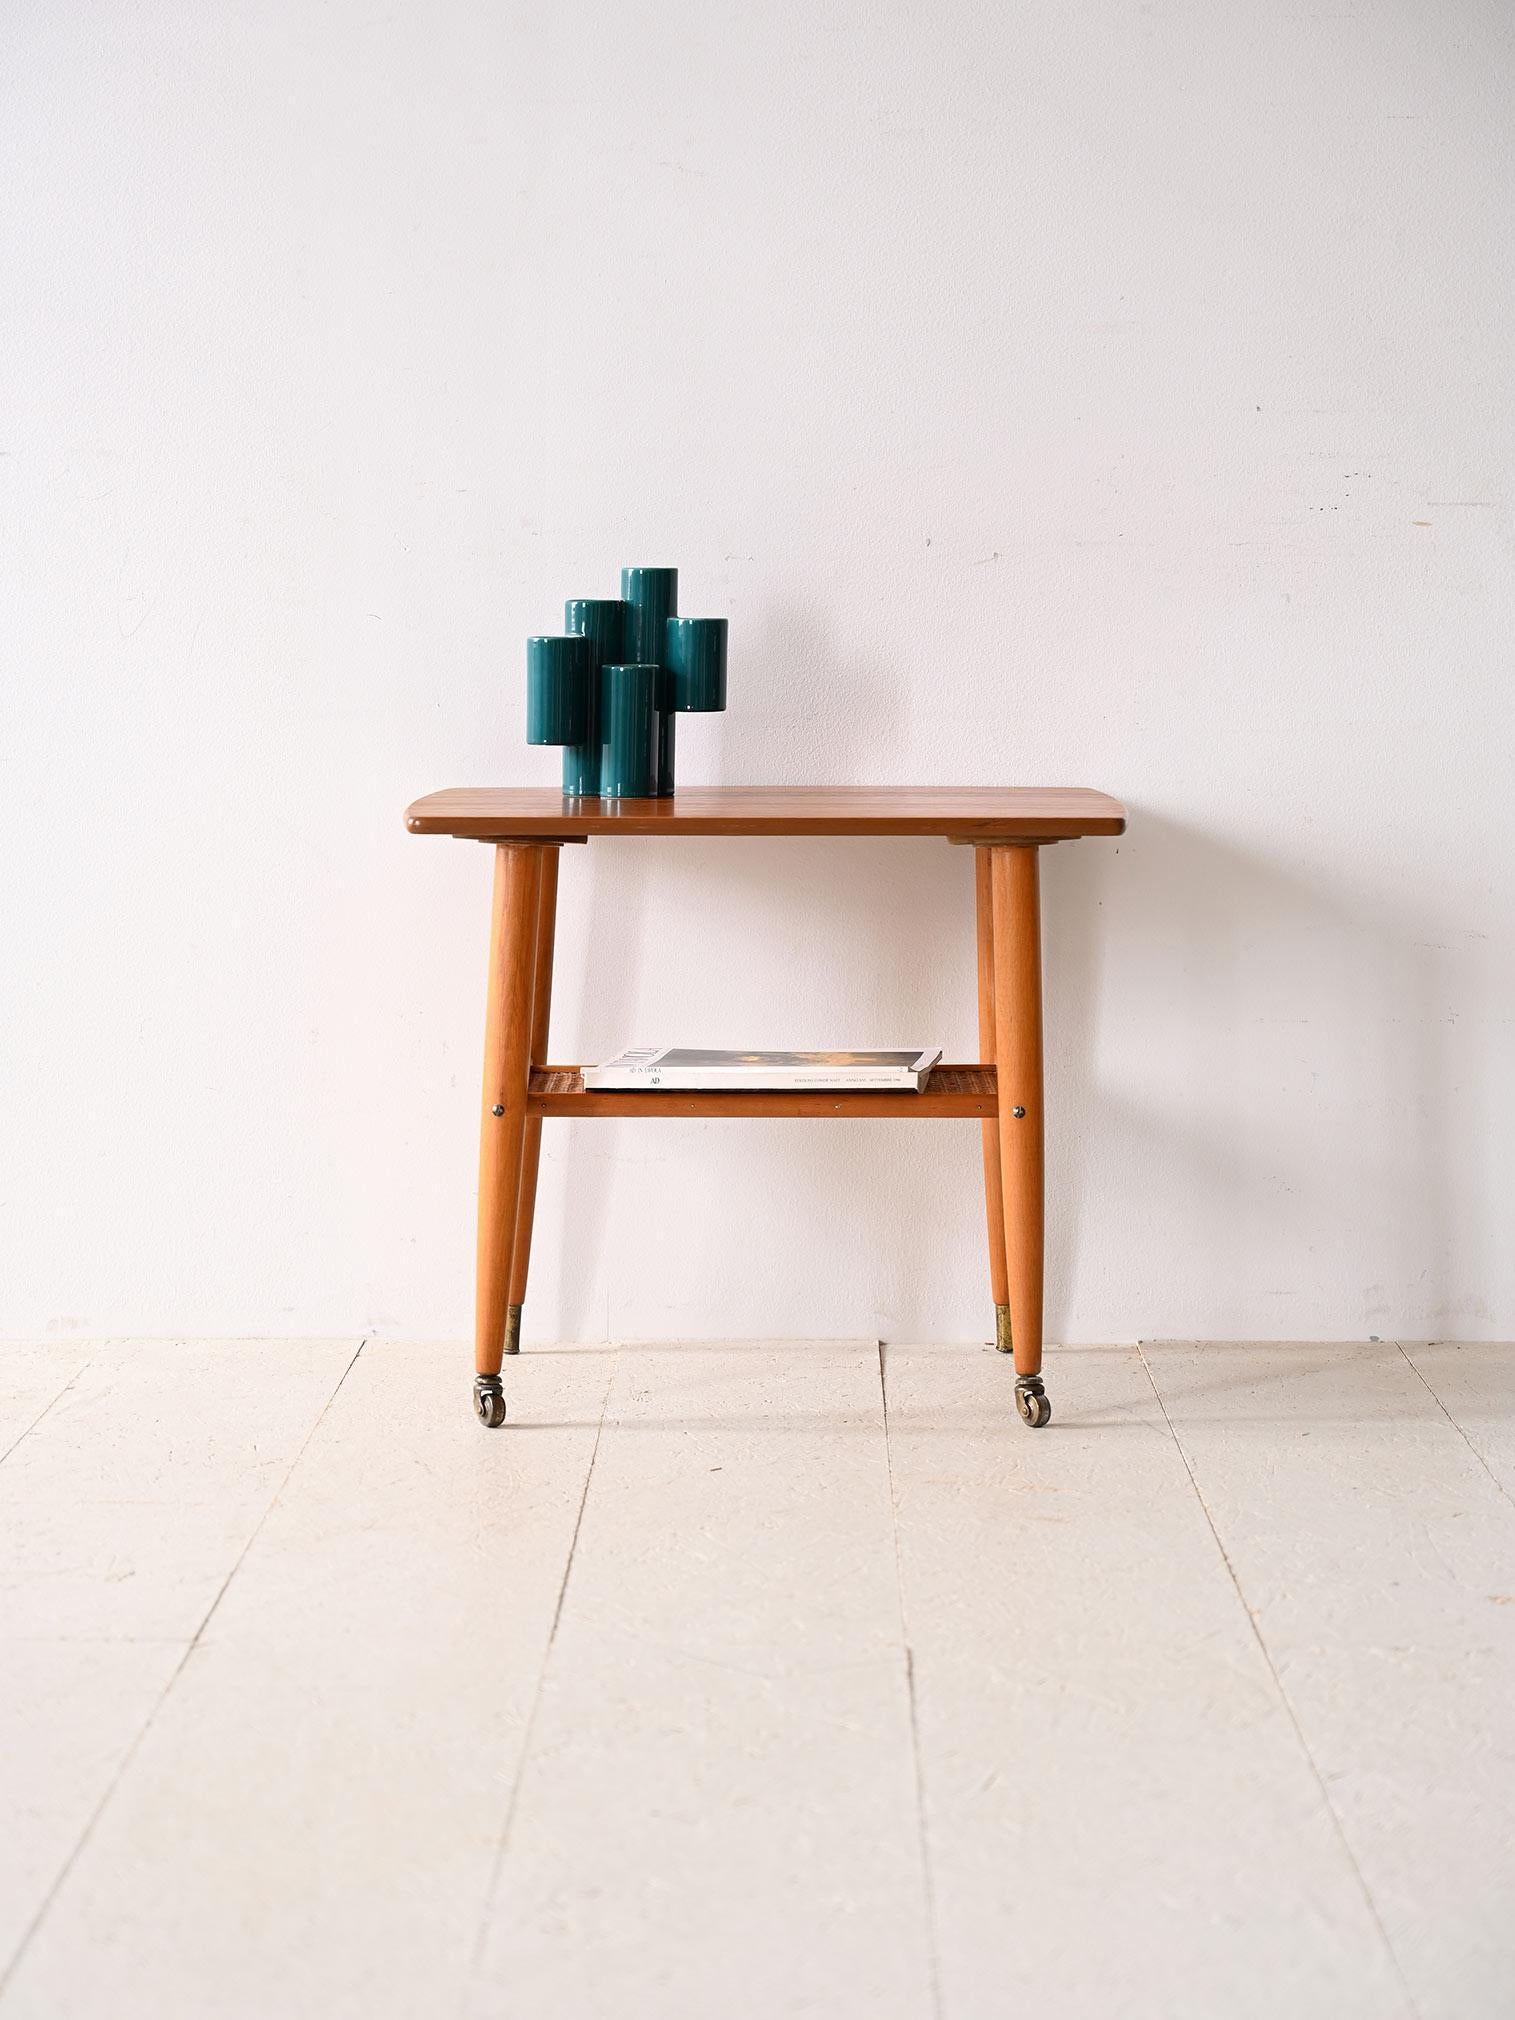 Vintage Couchtisch mit Rädern.

Ein skandinavisch-modernes Möbelstück mit nüchternen und eleganten Linien. Es zeichnet sich durch die Form der Platte mit abgerundeten Ecken, konisch zulaufenden Beinen mit Messingzwinge und Rollen sowie einer